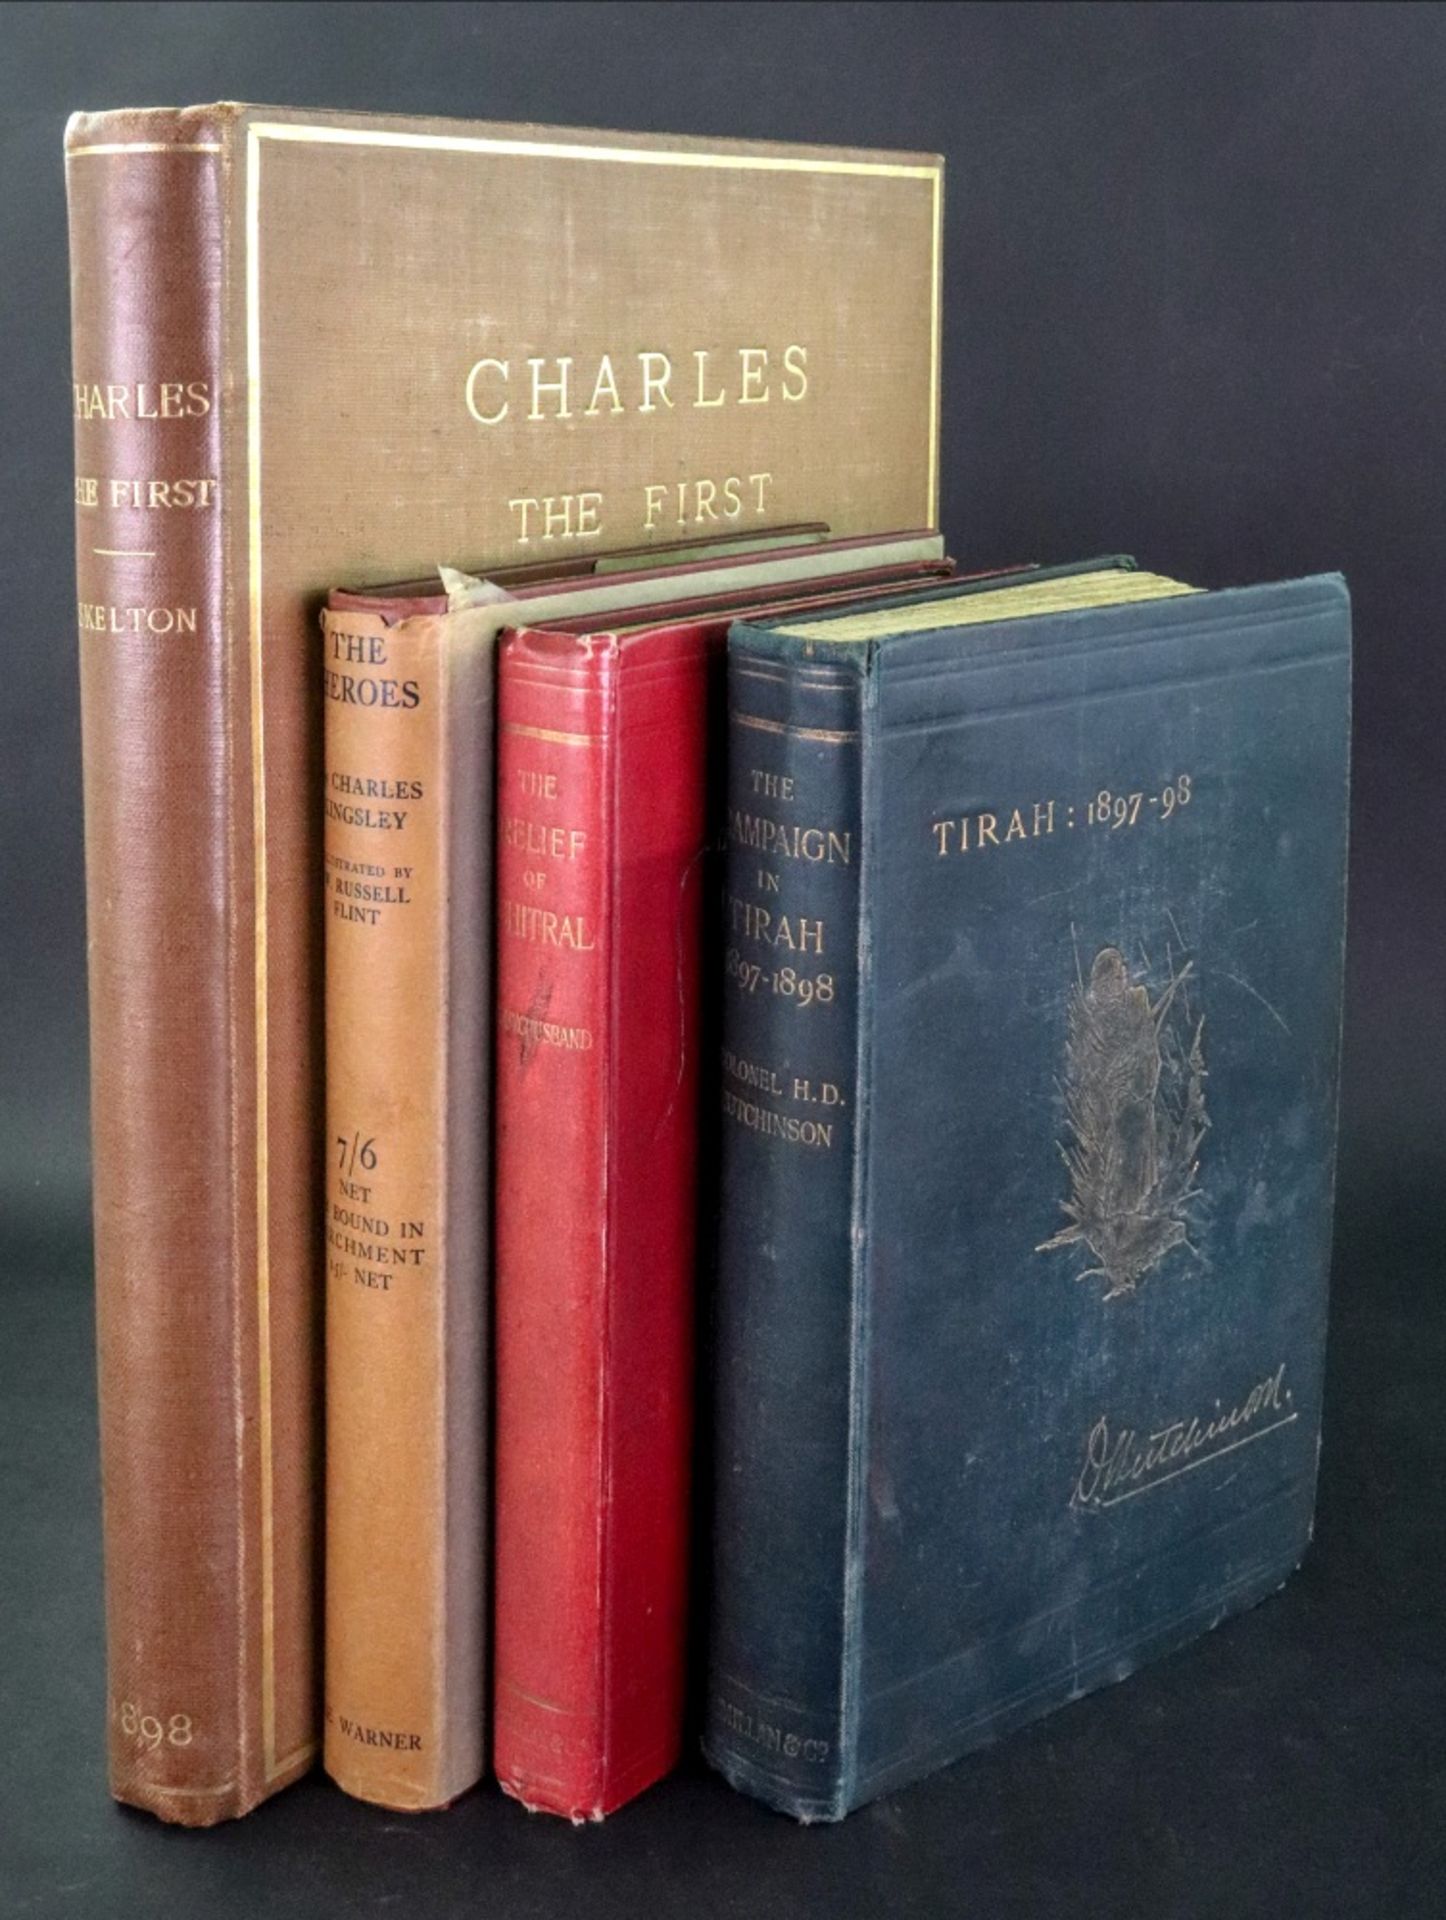 SKELETON (Sir John) Charles I, Goupil & Co, 1898, tissue guarded illustrations, gilt cloth,